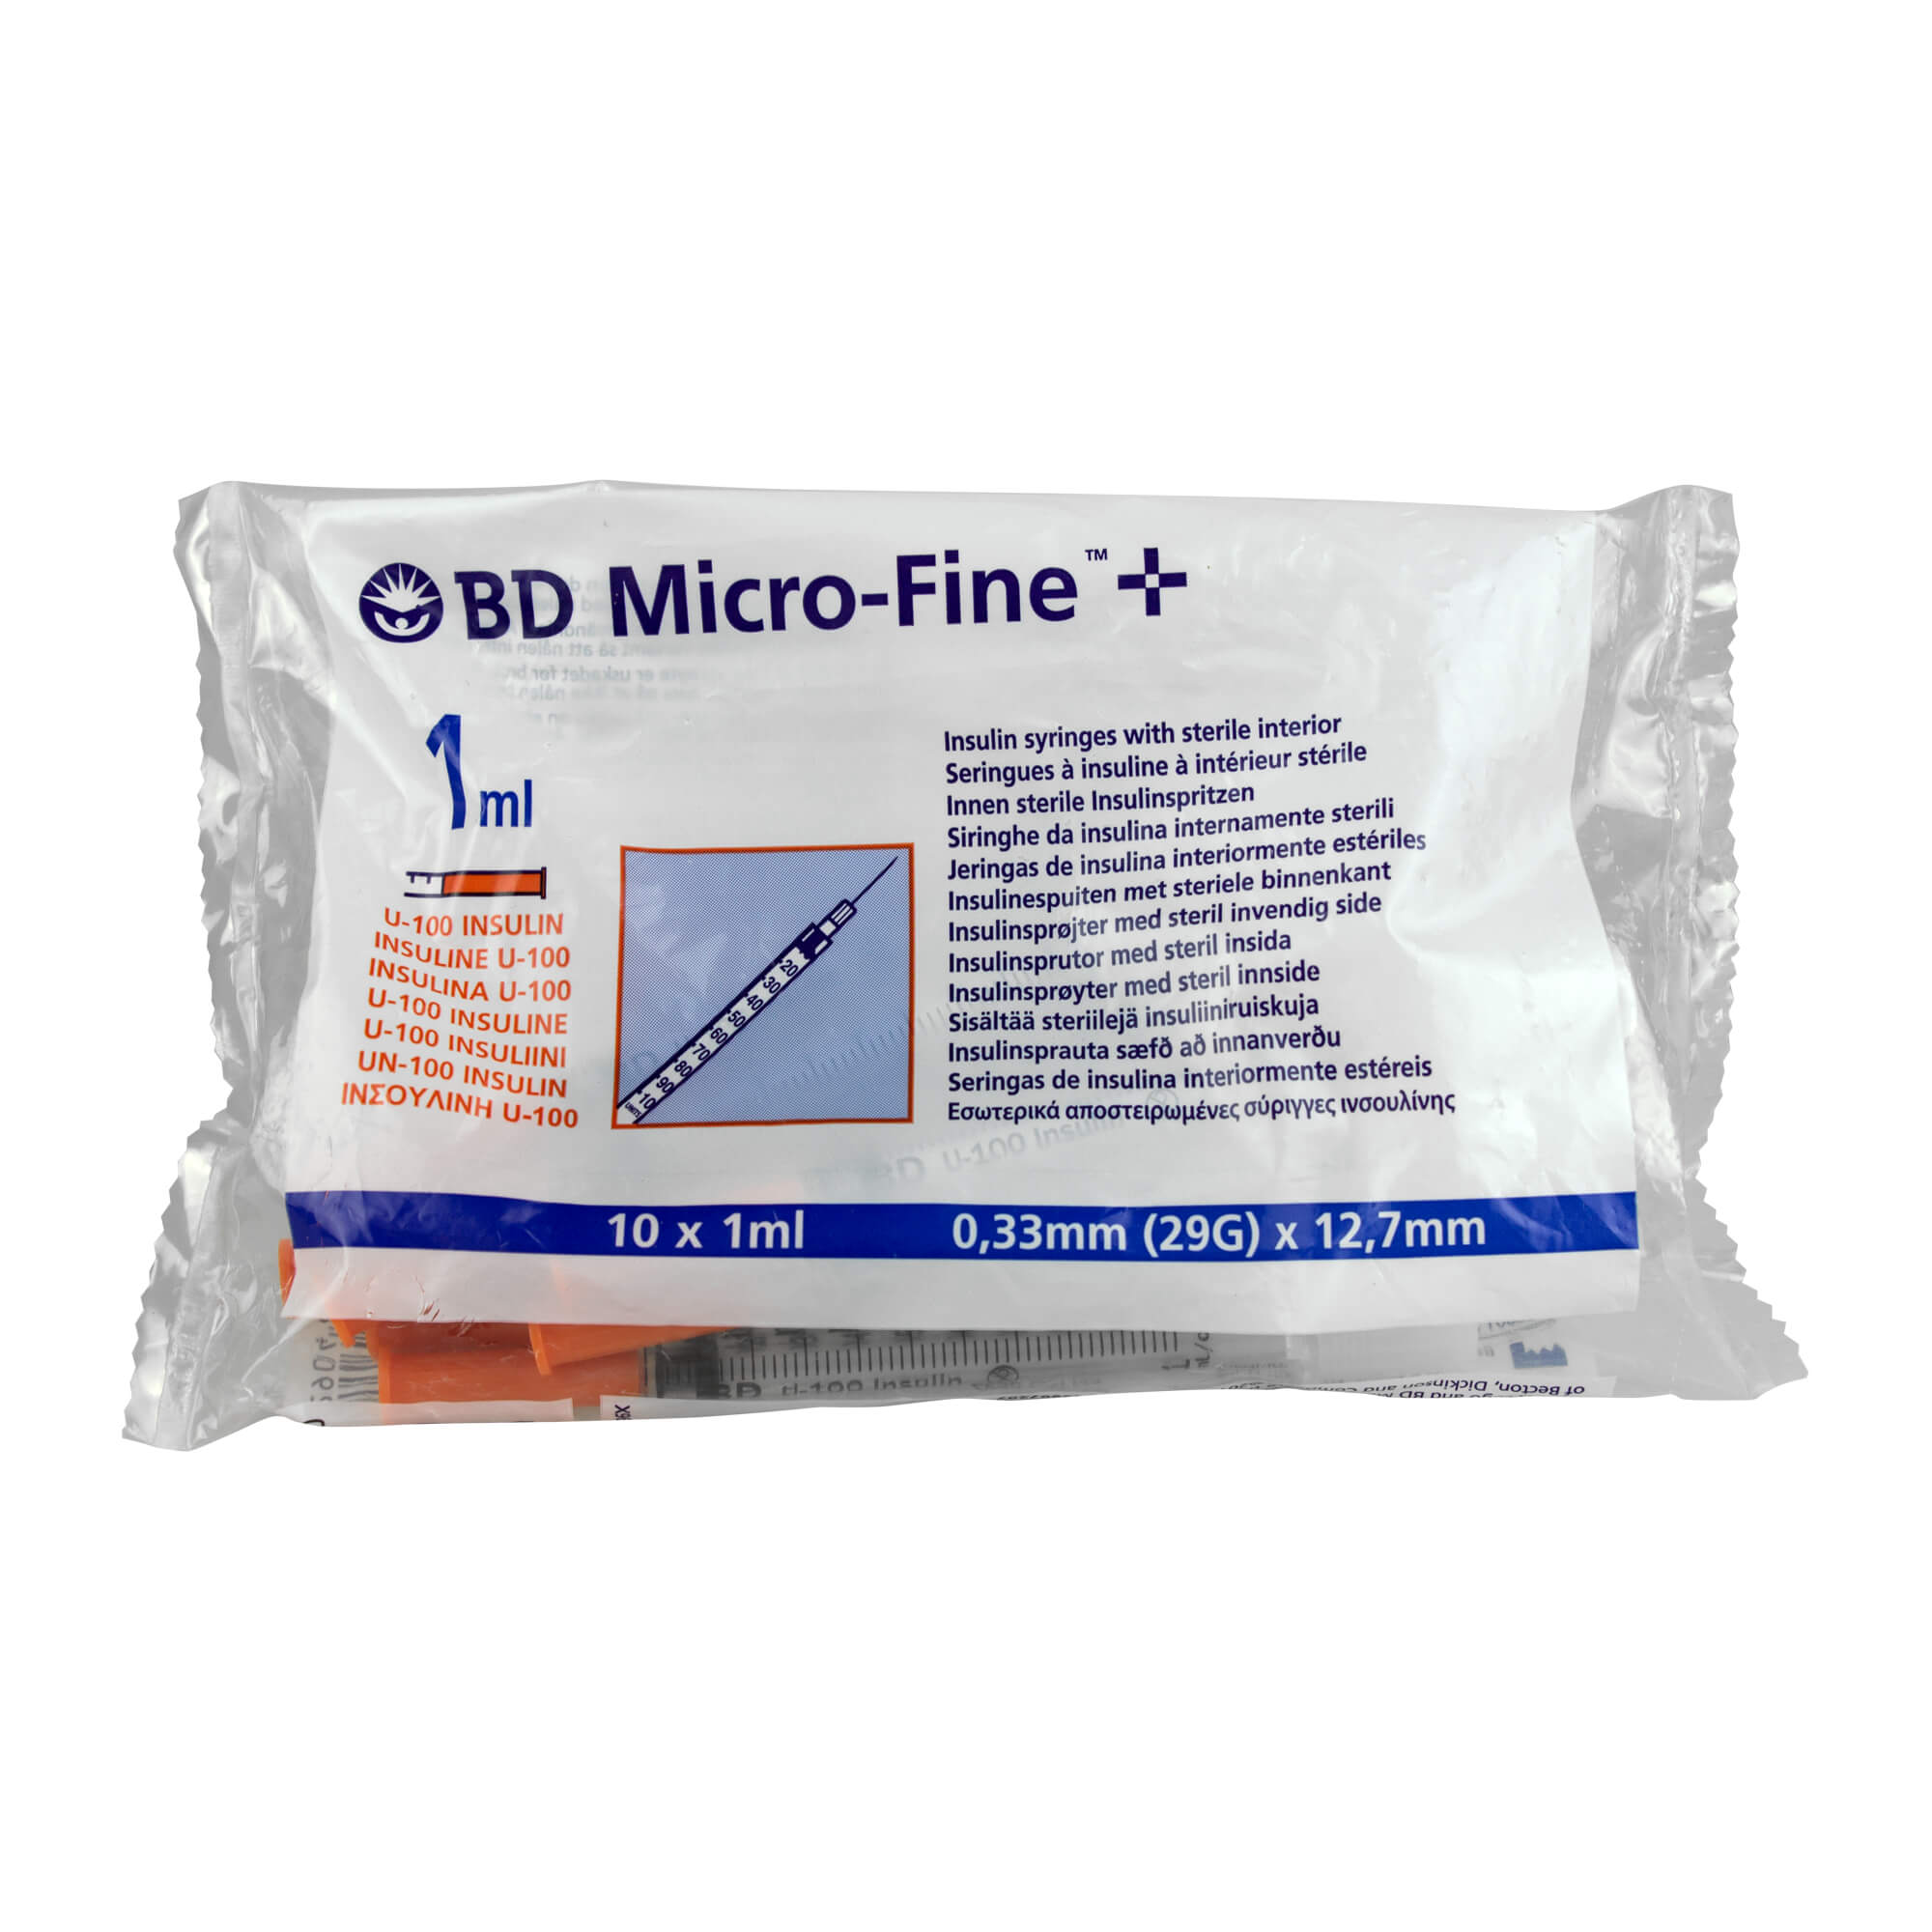 BD Micro-Fine+ Insulinspritzen 1,0 ml für U100-Insuline, Nadellänge: 12,7 mm, Nadelstärke: 0,33 mm.